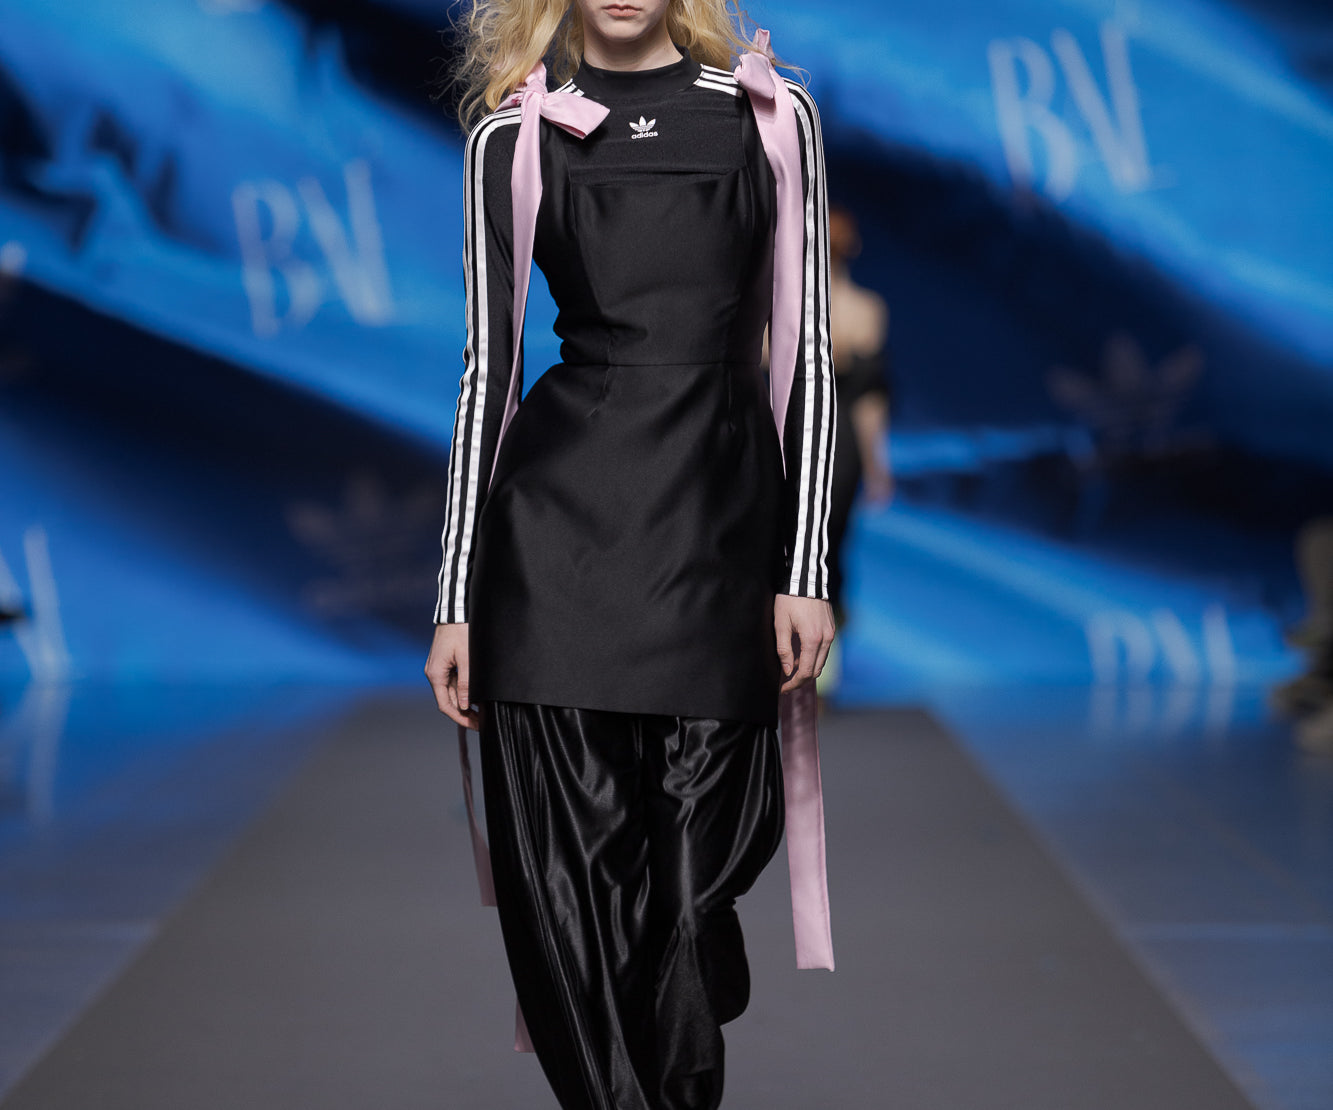 Redefining Elegance: BAÉ x Adidas Riga Showcase Innovative Street Styles at Riga Fashion Week